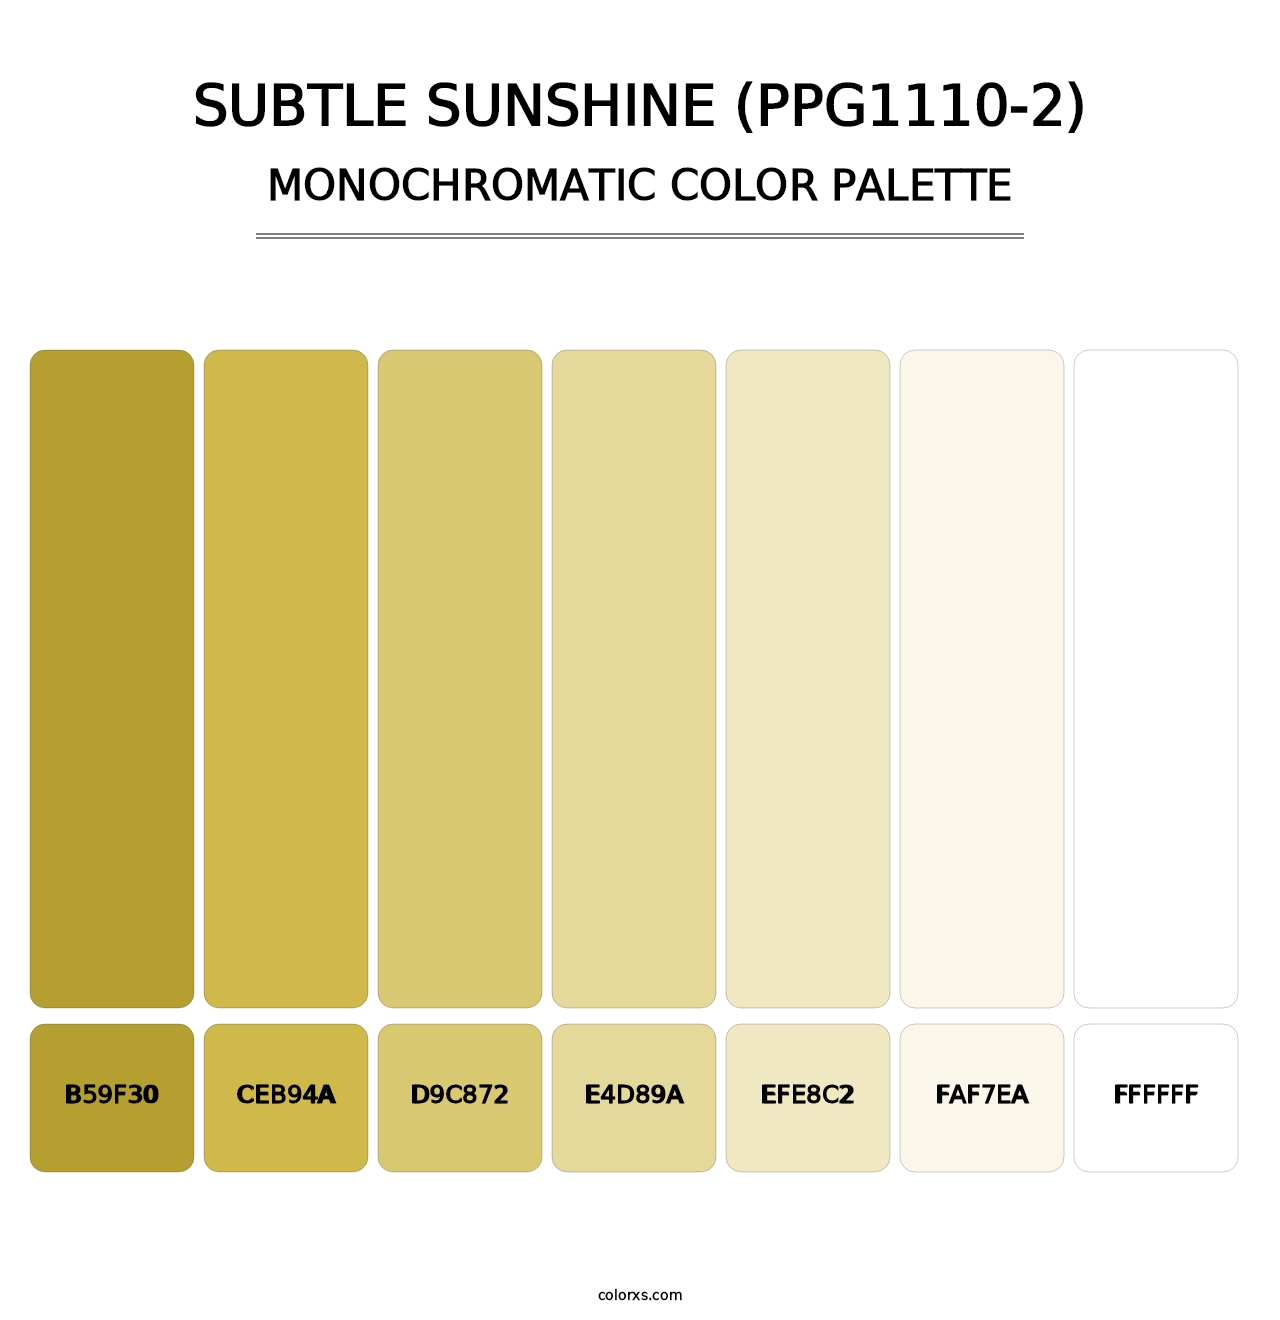 Subtle Sunshine (PPG1110-2) - Monochromatic Color Palette